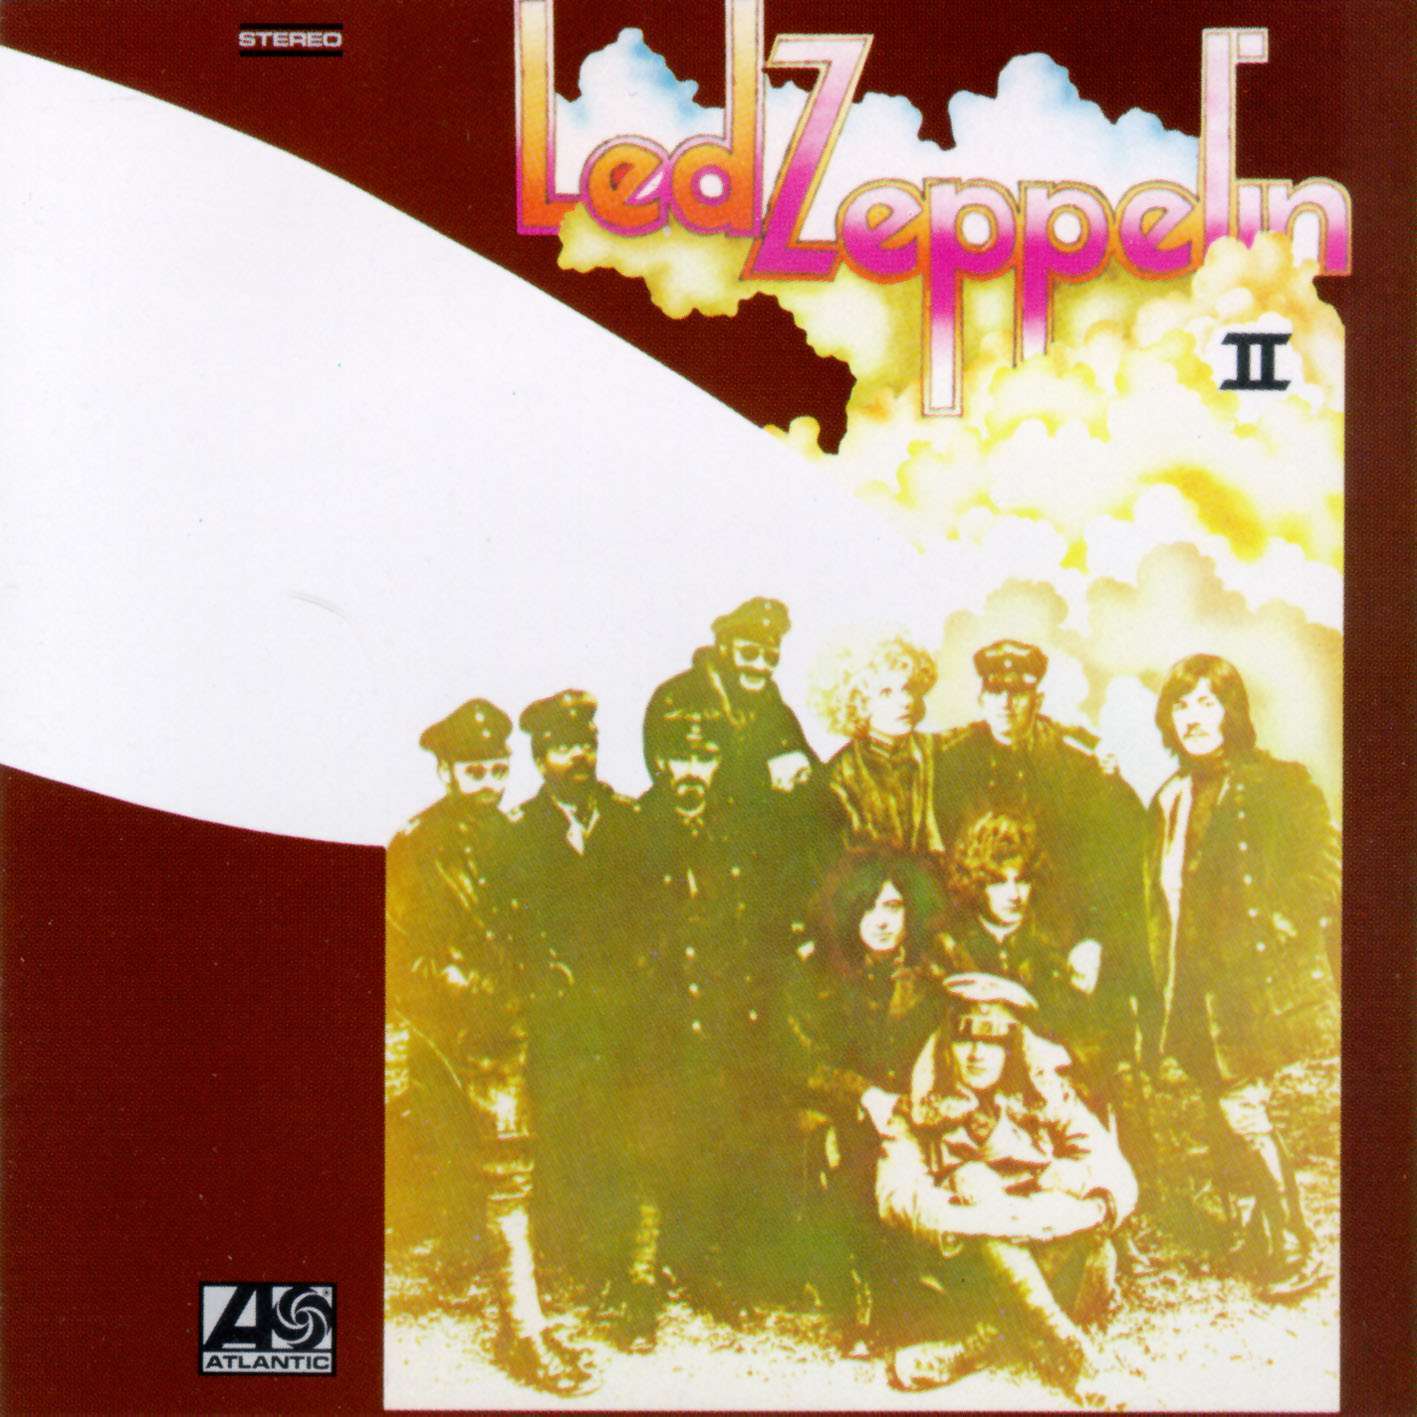 Led+Zeppelin+II+frontal.jpg